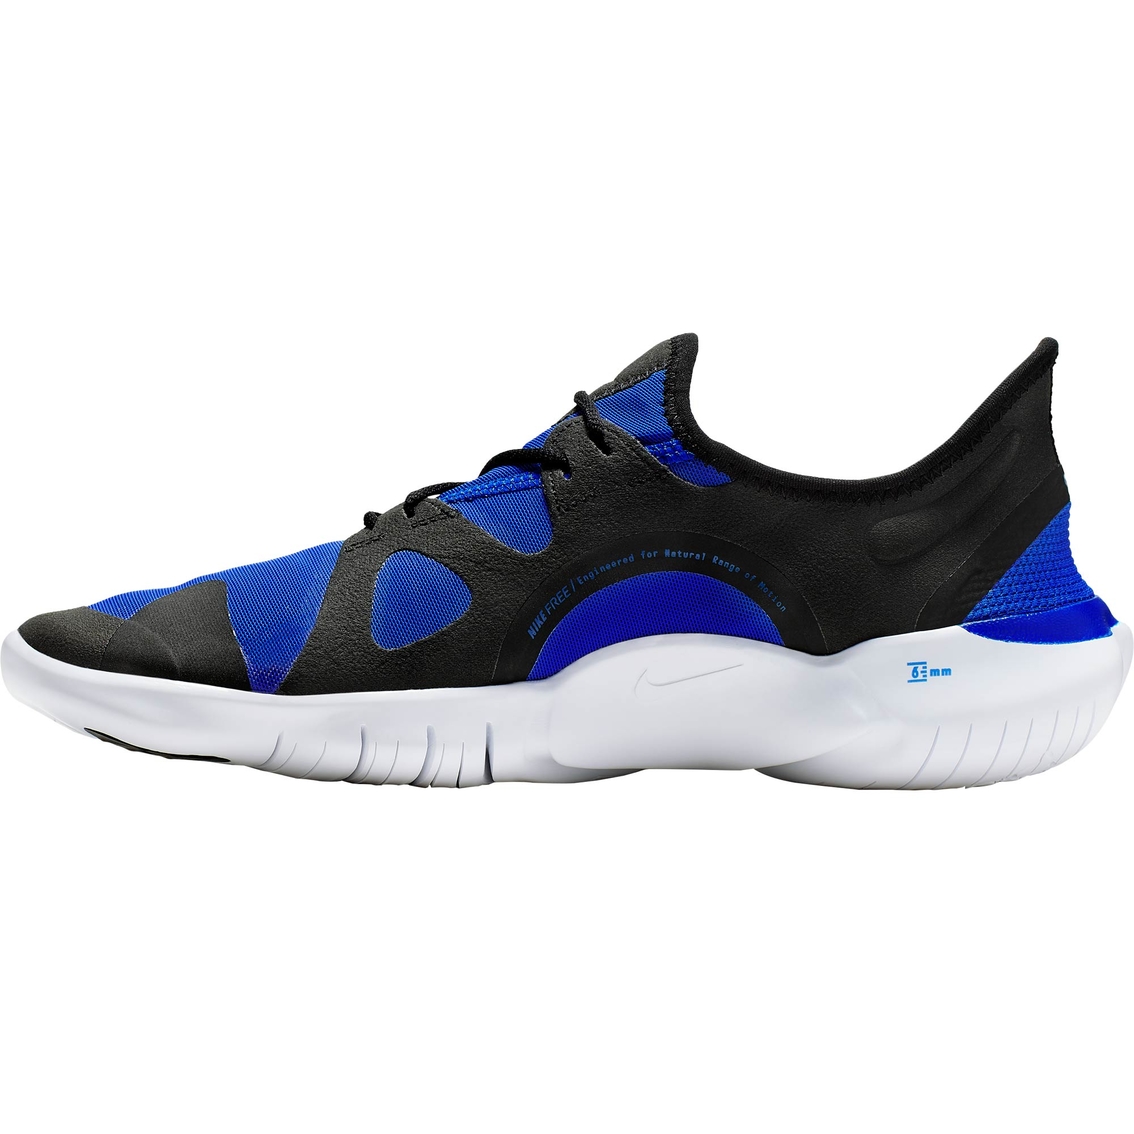 Nike Men's Free RN 5.0 Running Shoes - Image 3 of 6